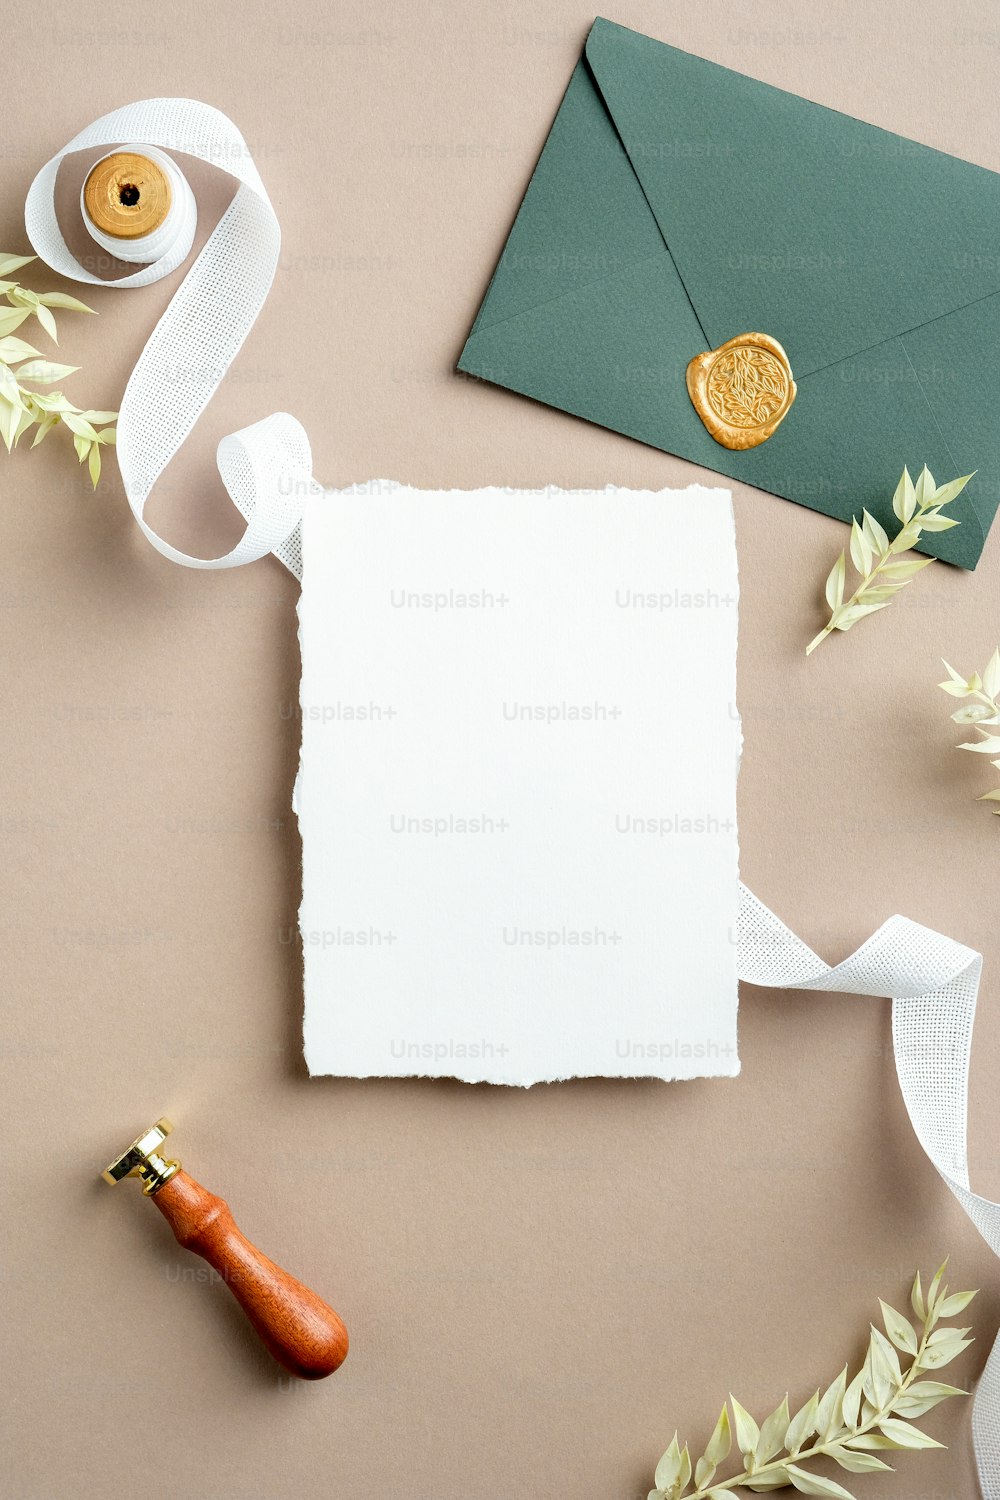 Hoja de papel rasgada, cinta de seda, sobre verde con sello de cera, flores secas sobre fondo beige pastel. Plantilla de tarjeta de invitación de boda. Plano plano, vista superior, espacio de copia.